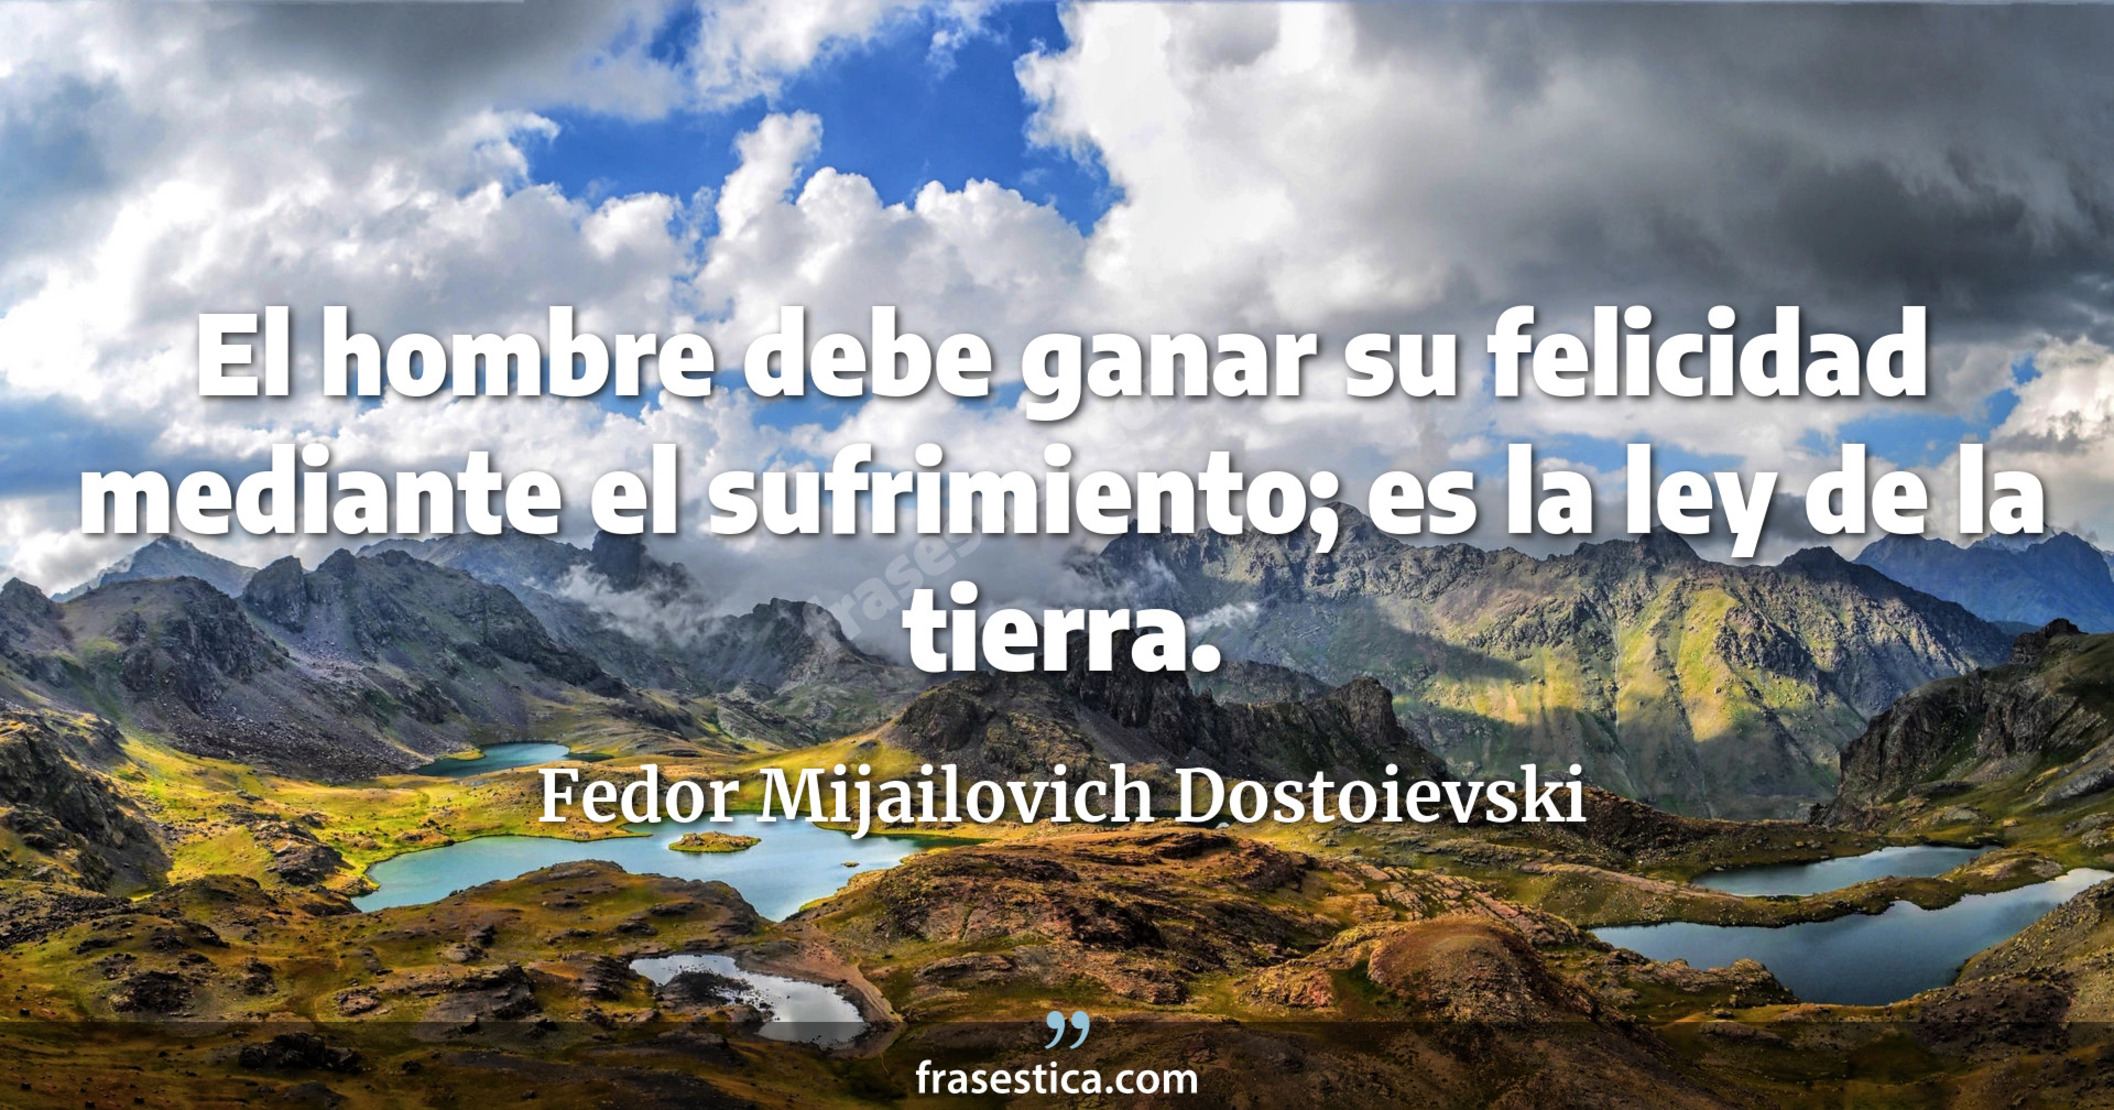 El hombre debe ganar su felicidad mediante el sufrimiento; es la ley de la tierra. - Fedor Mijailovich Dostoievski